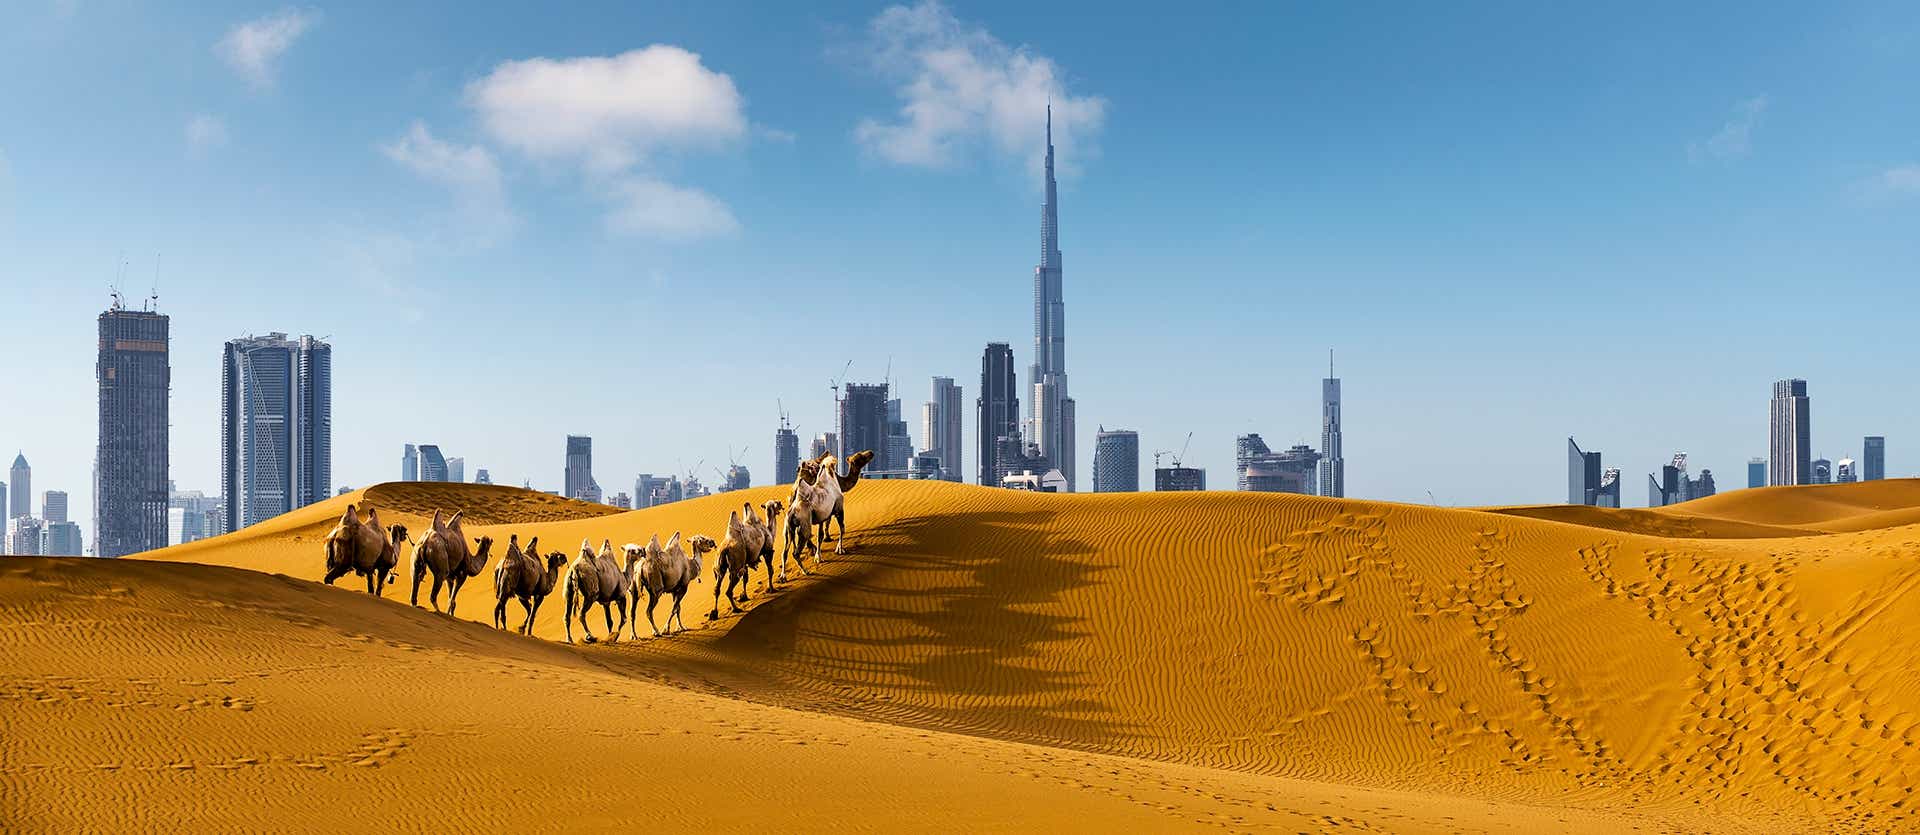 Desierto de Dubái <span class="iconos separador"></span> Emiratos Árabes Unidos